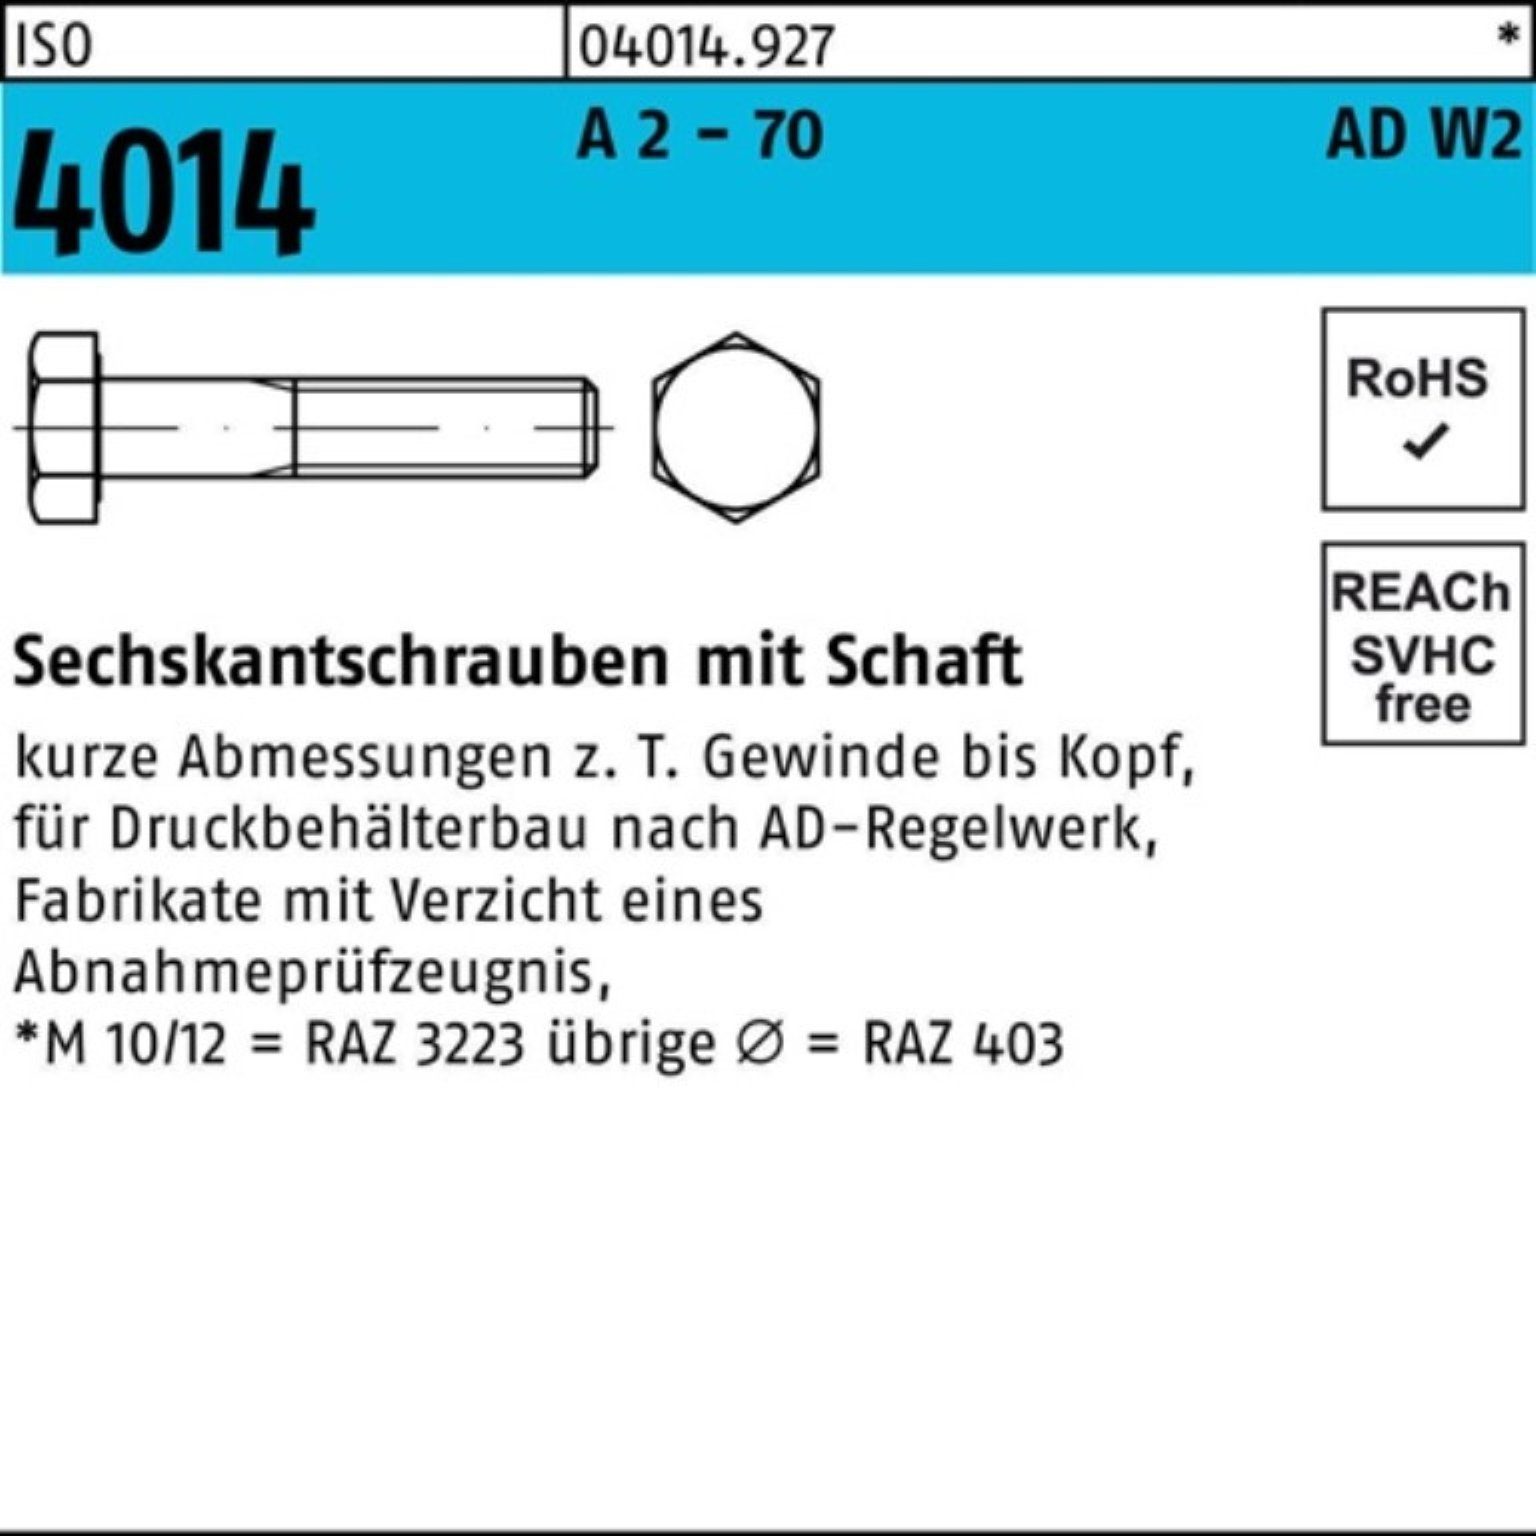 Schaft - M12x Sechskantschraube 4014 Bufab Pack ISO 2 A 100er 2 70 110 Sechskantschraube AD-W2